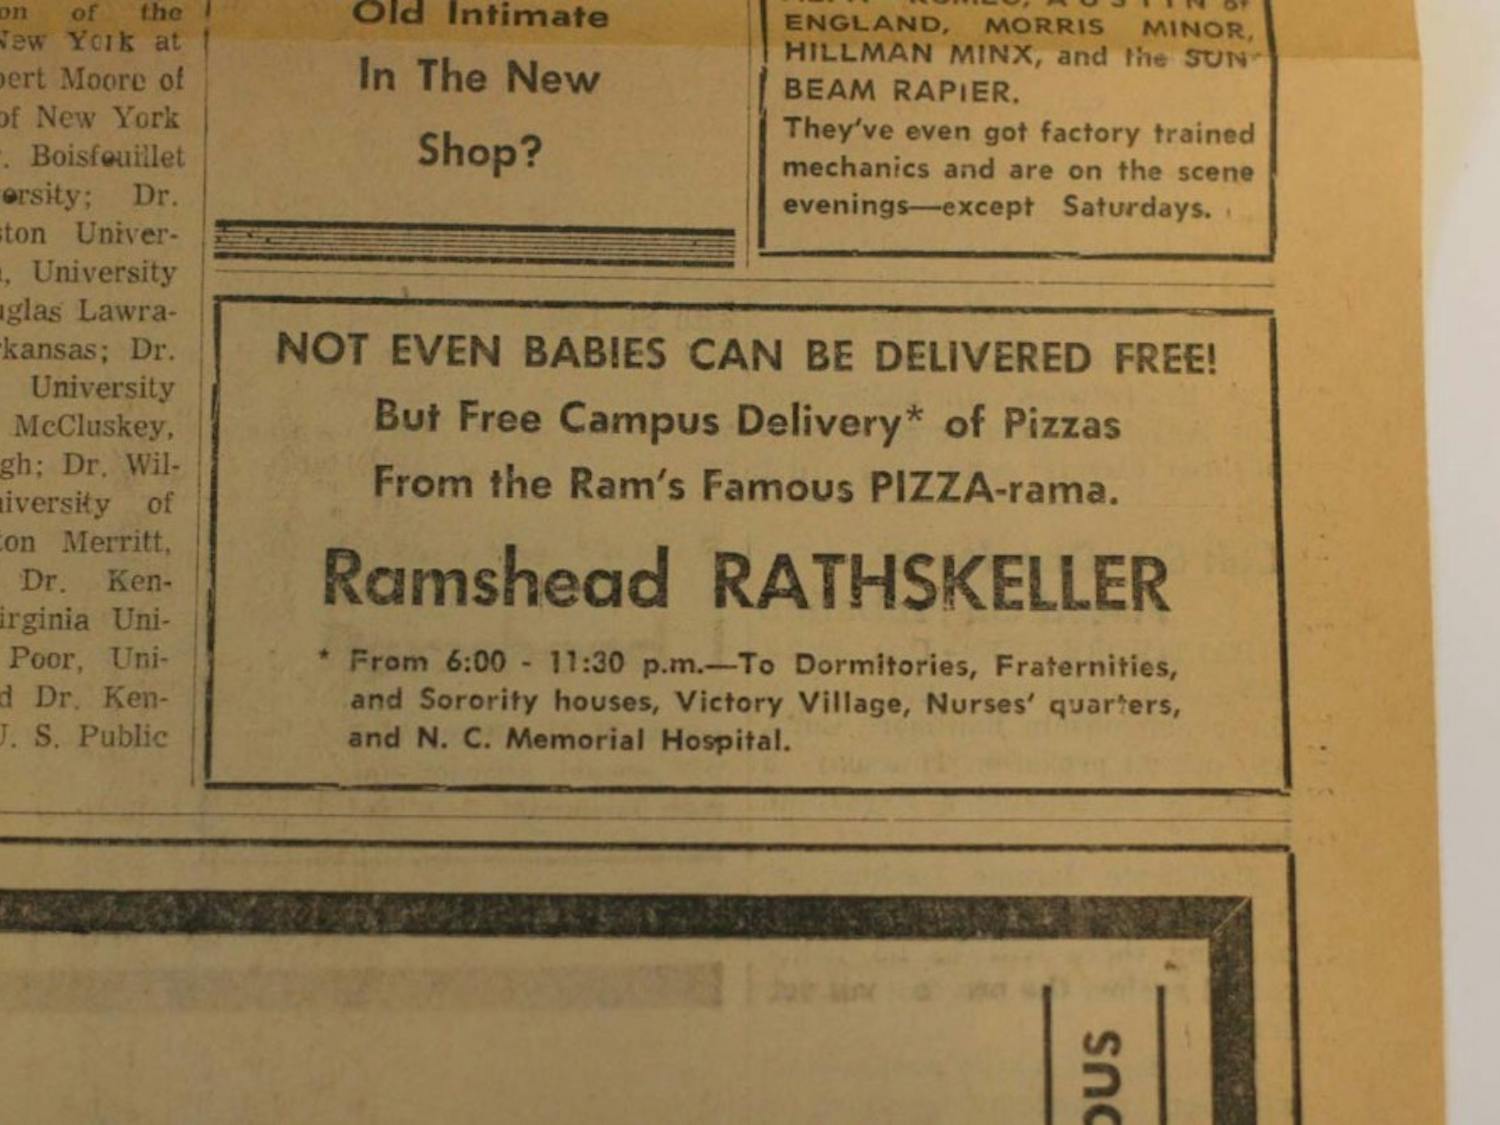 Ramshead Rathskeller